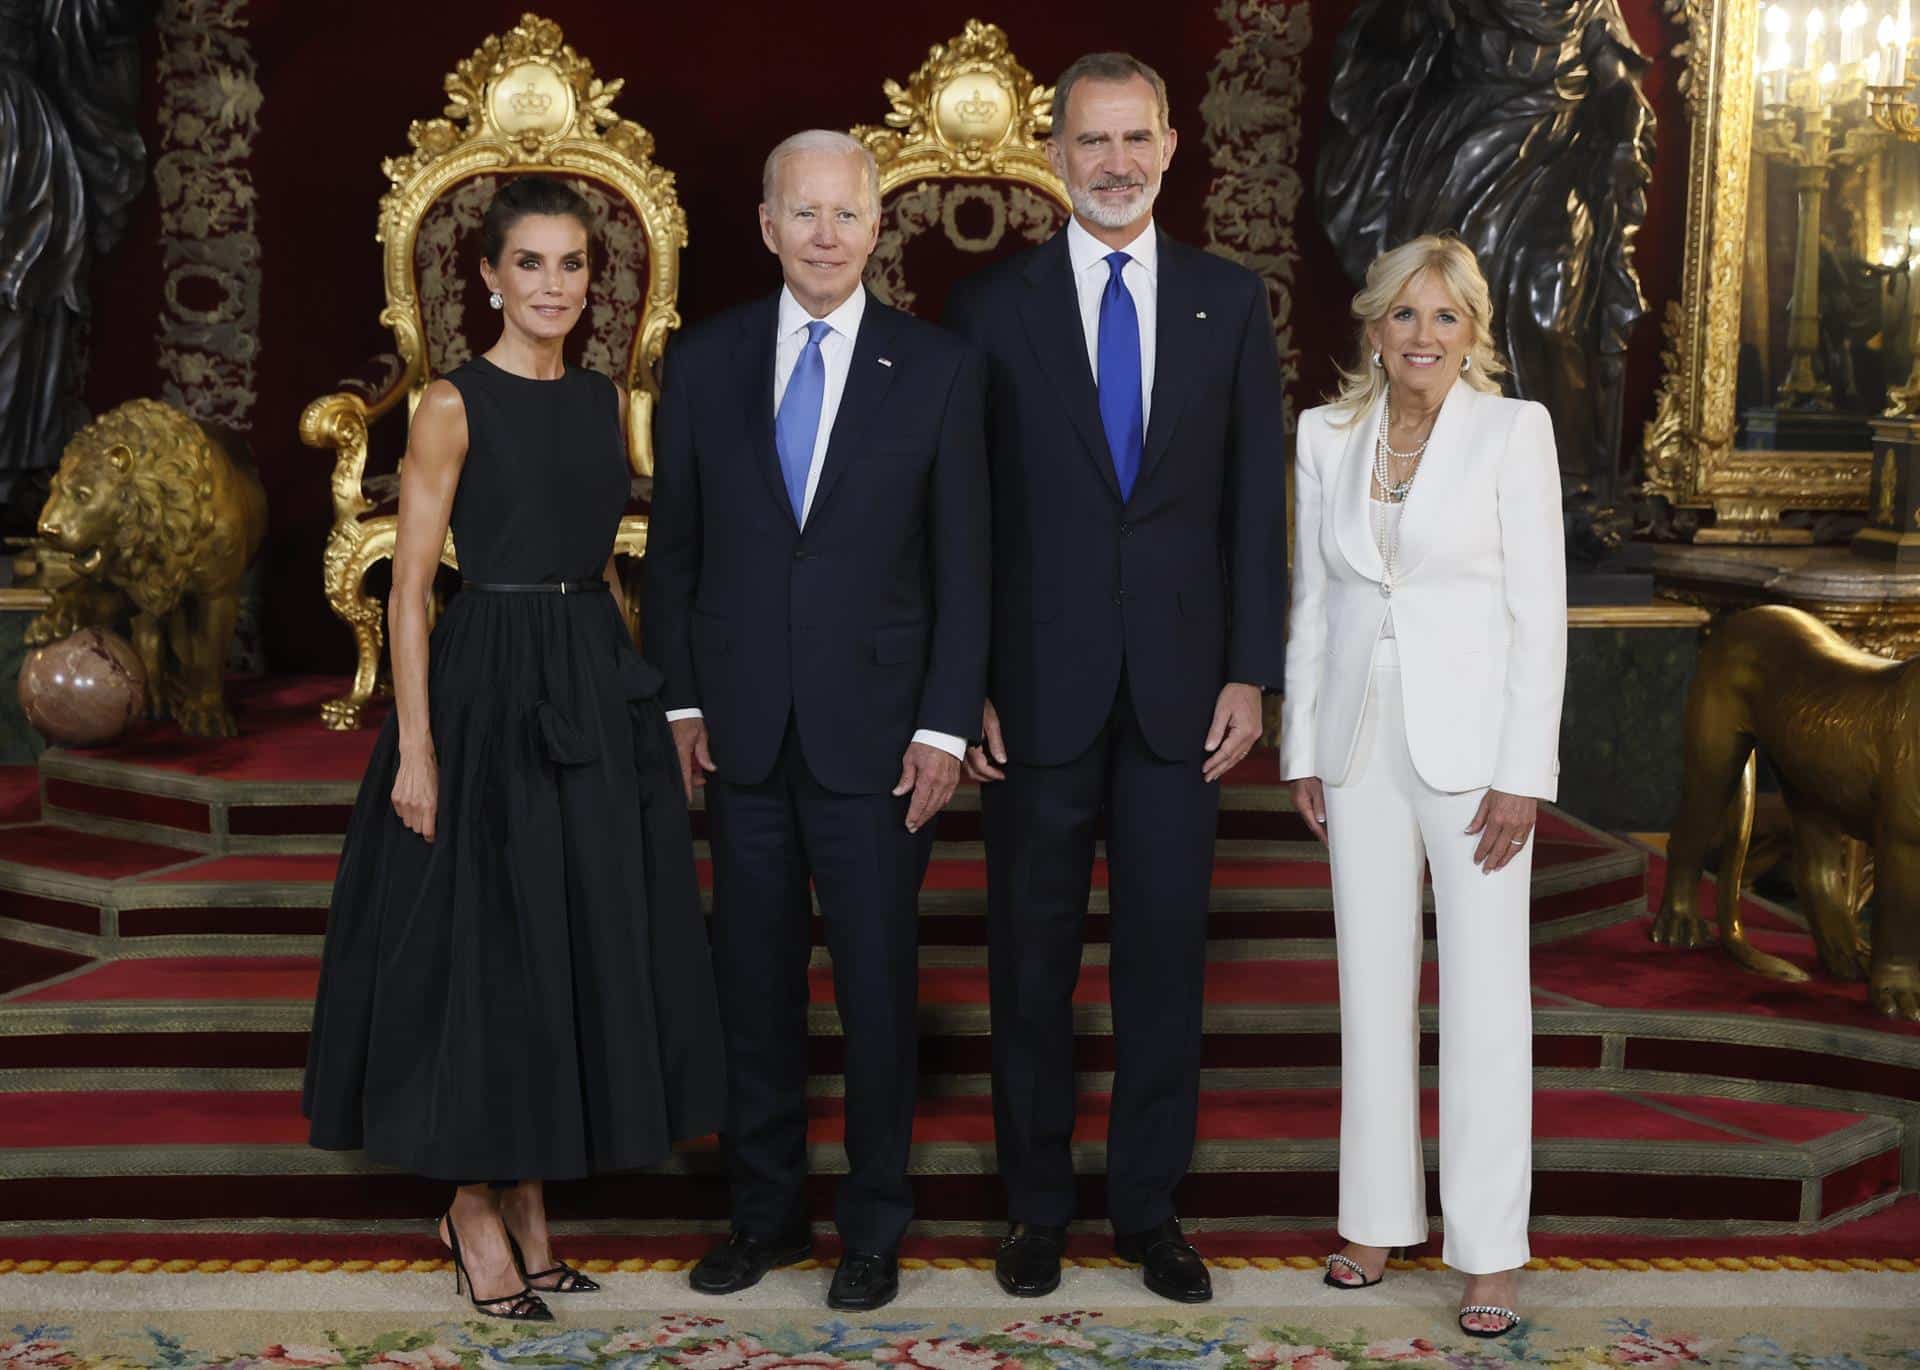 Los Reyes con Joe Biden y Jill Biden en la cena de gala en la Cumbre de la OTAN